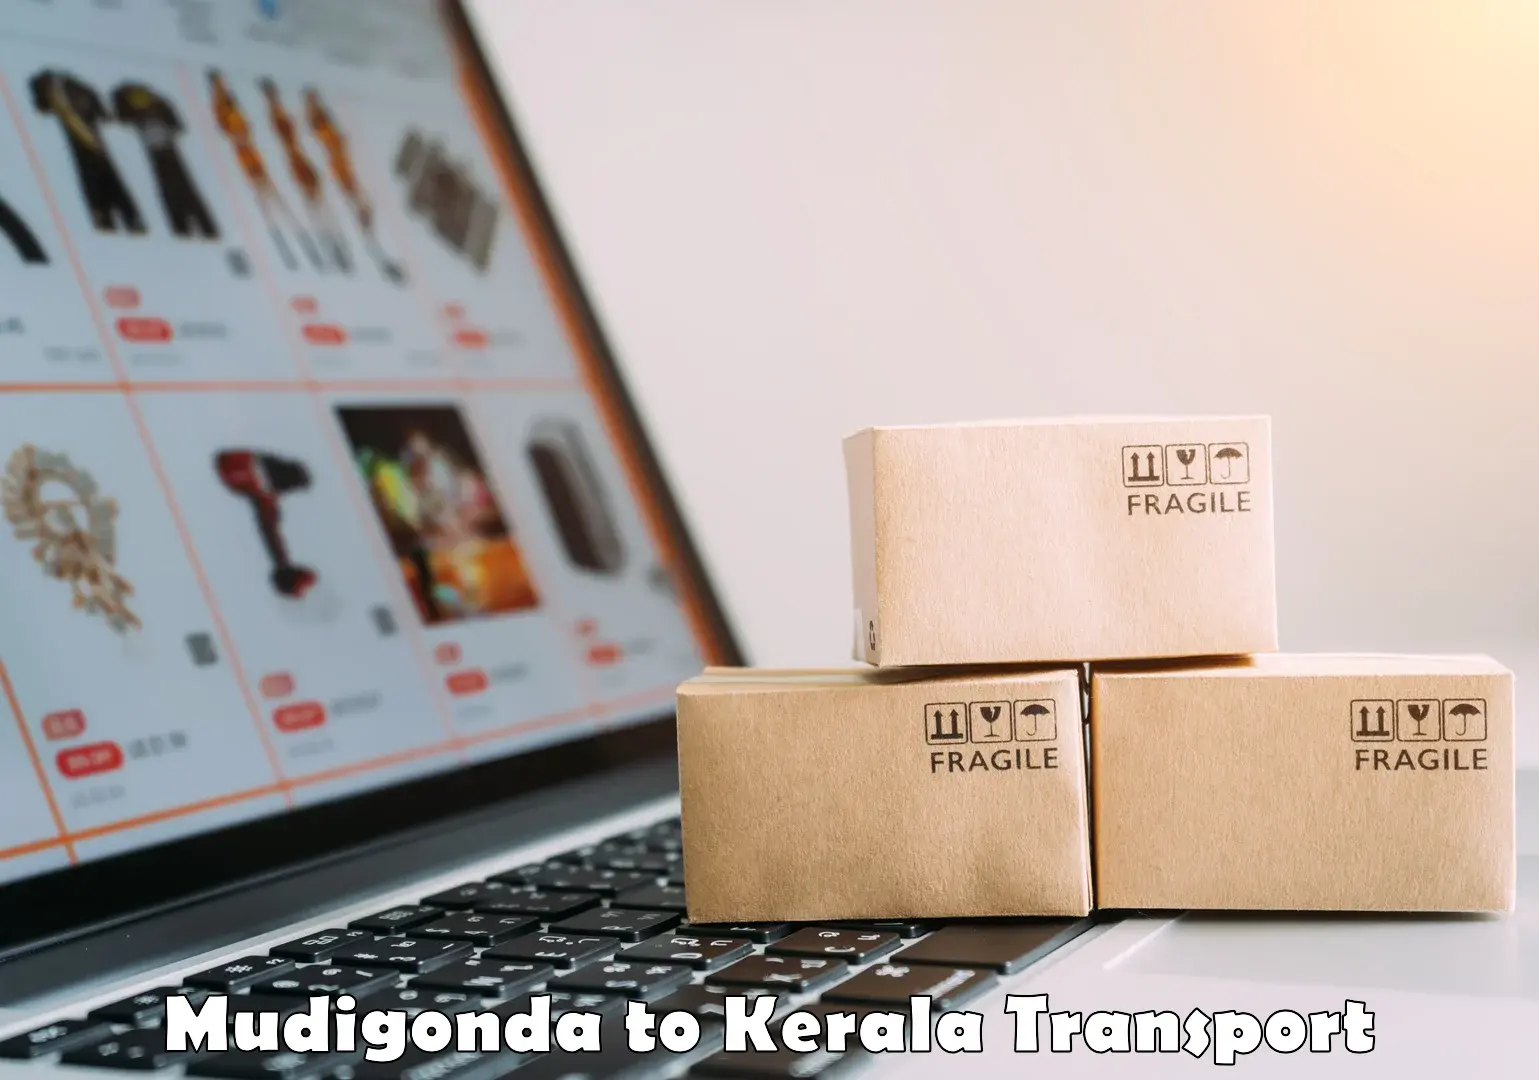 Air cargo transport services Mudigonda to Attingal